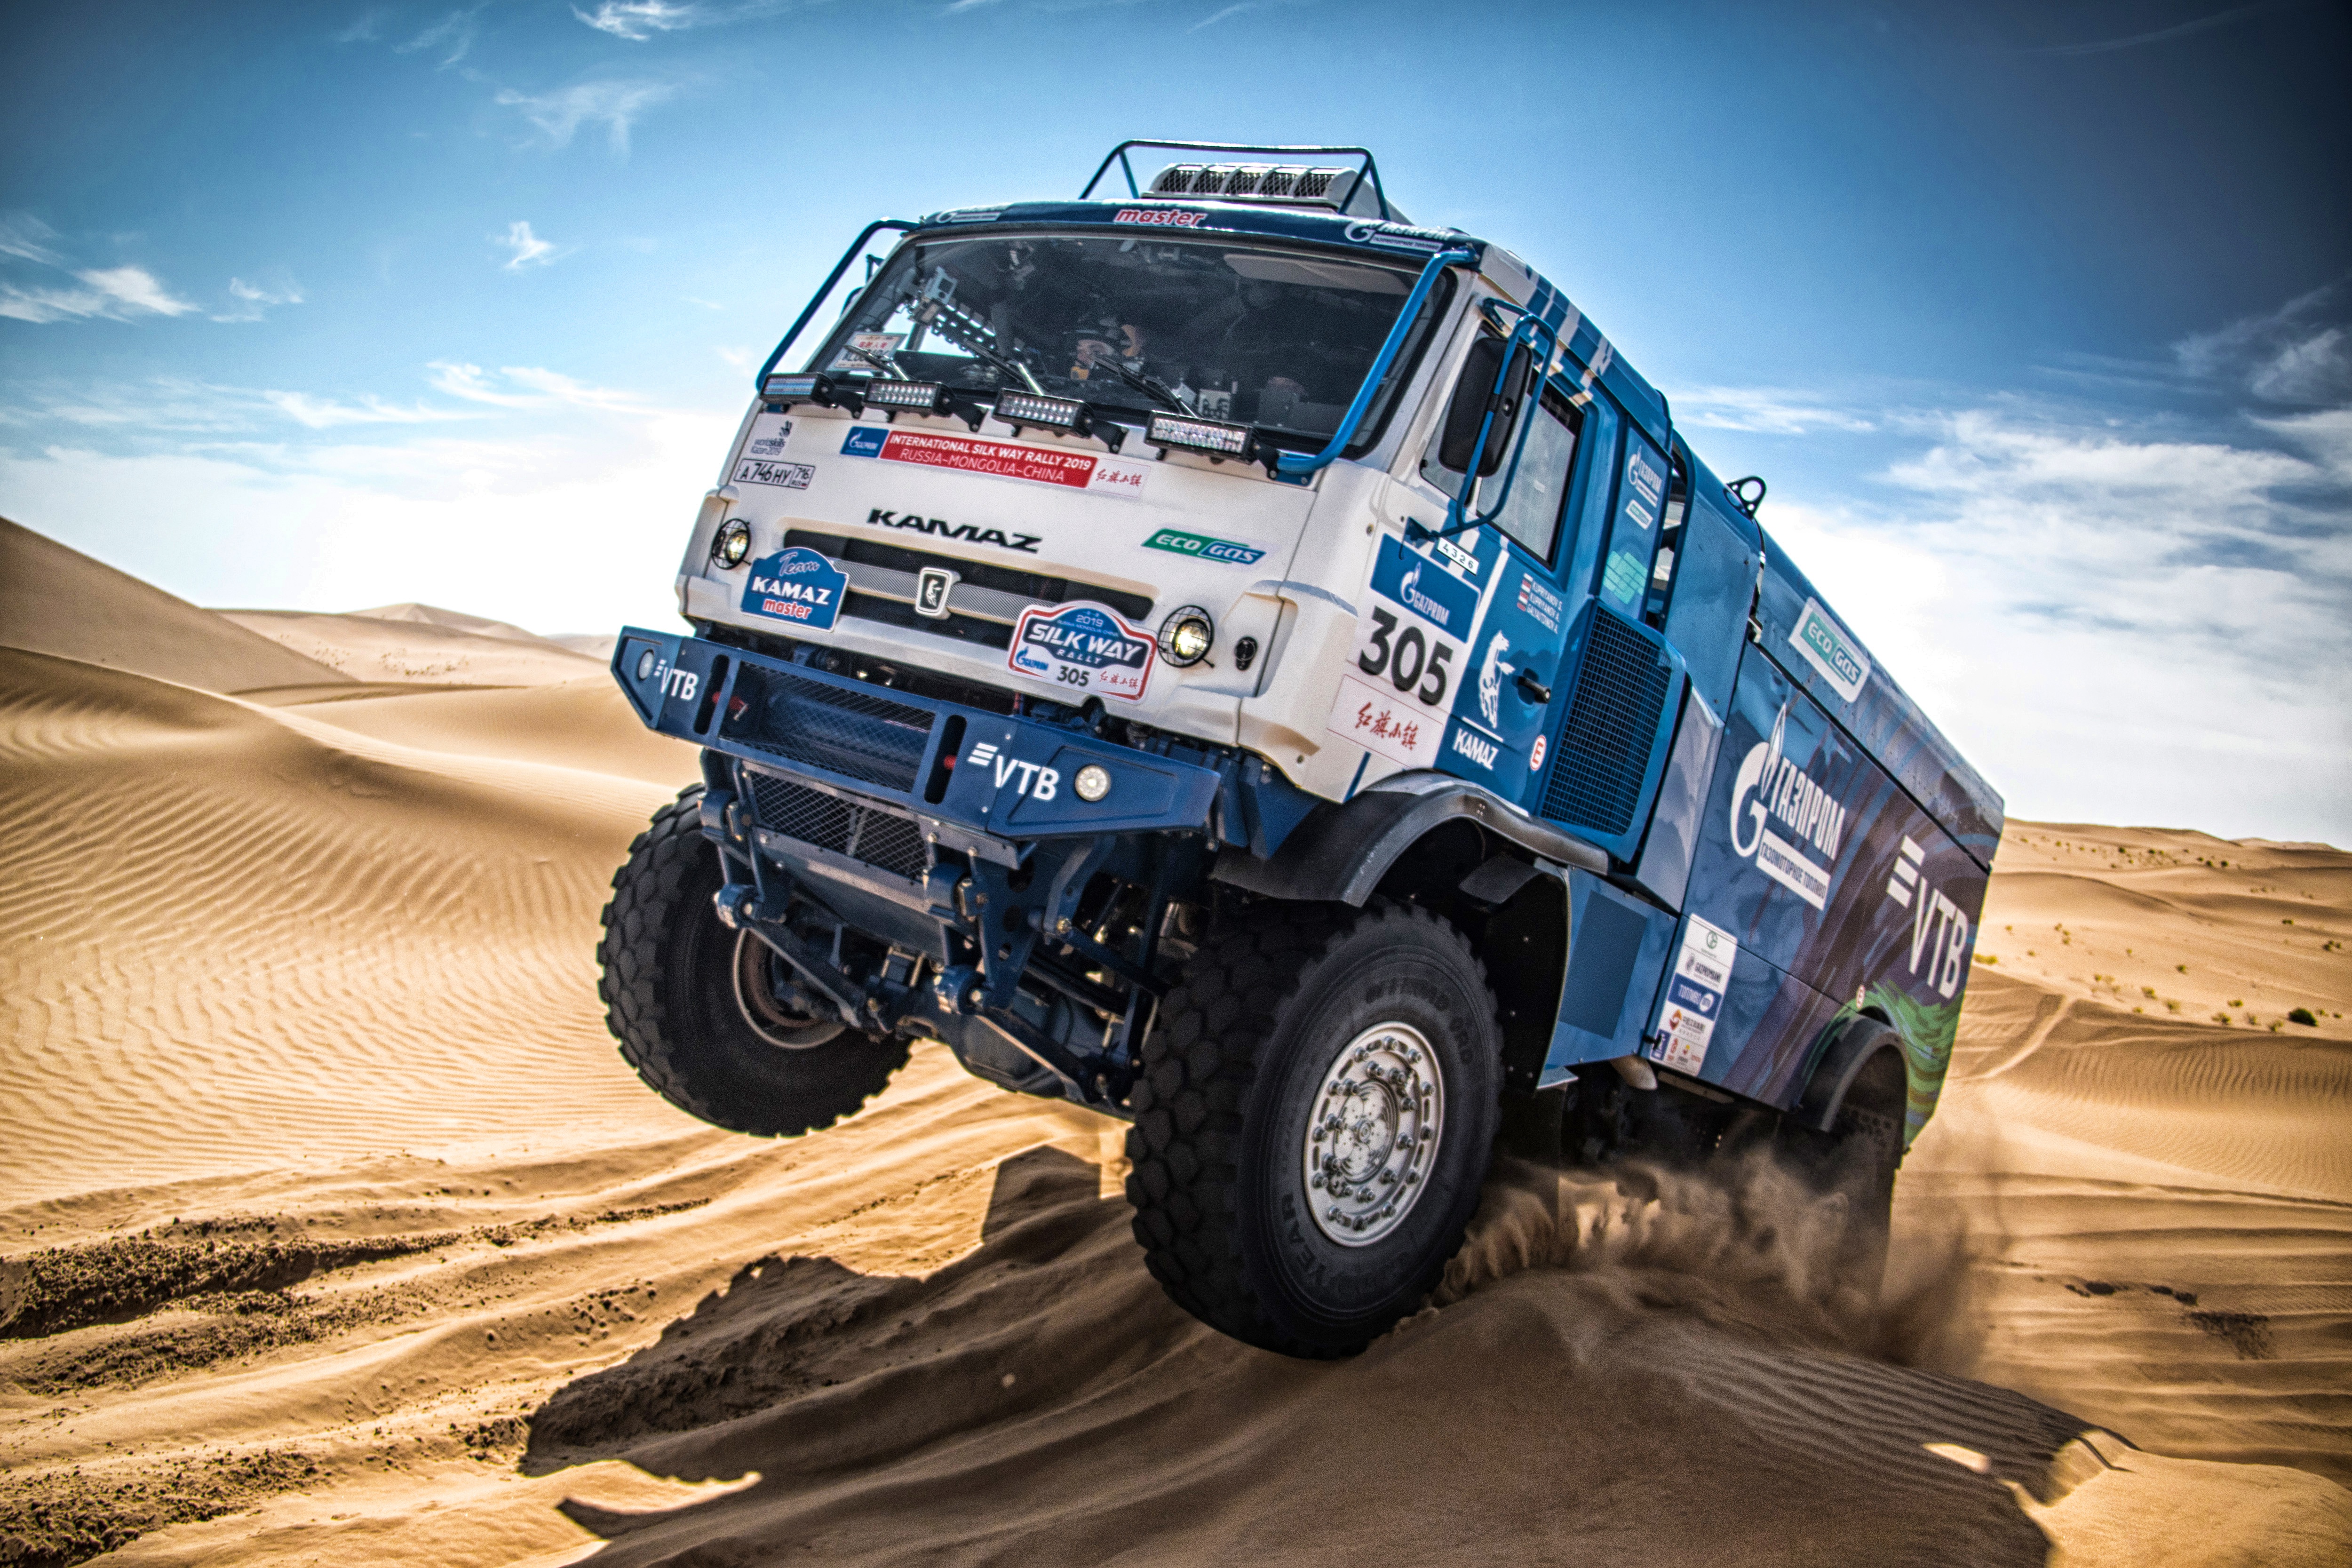 Desert Kamaz Rallying Red Bull Sand Truck Vehicle 5000x3333